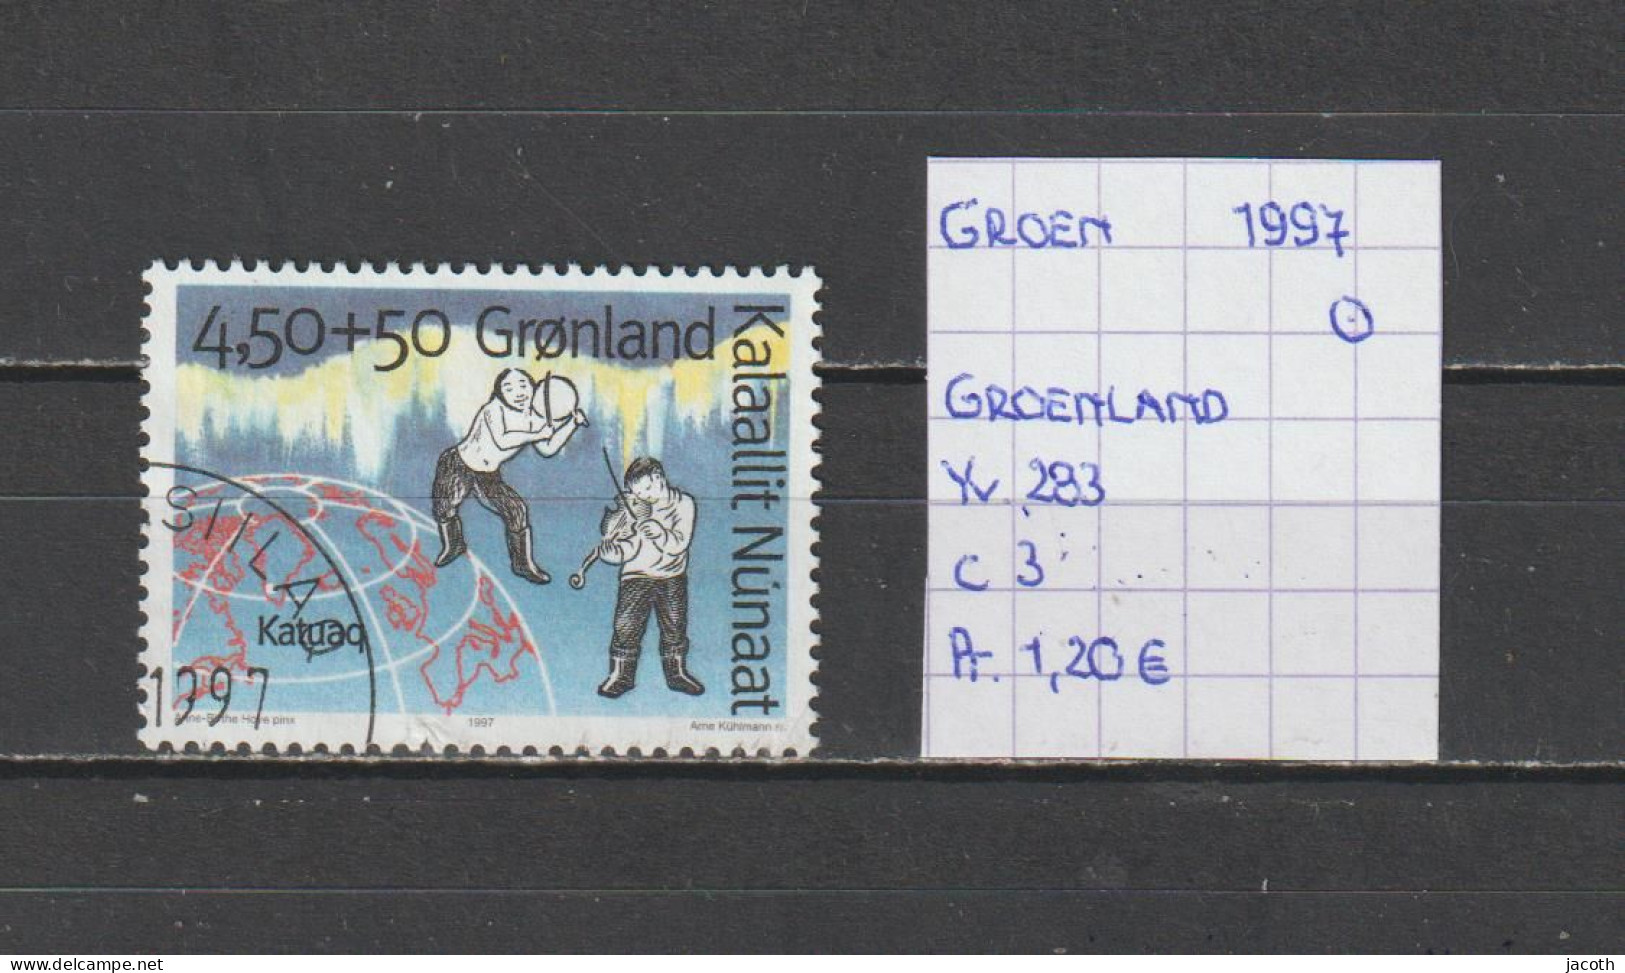 (TJ) Groenland 1997 - YT 283 (gest./obl./used) - Usados